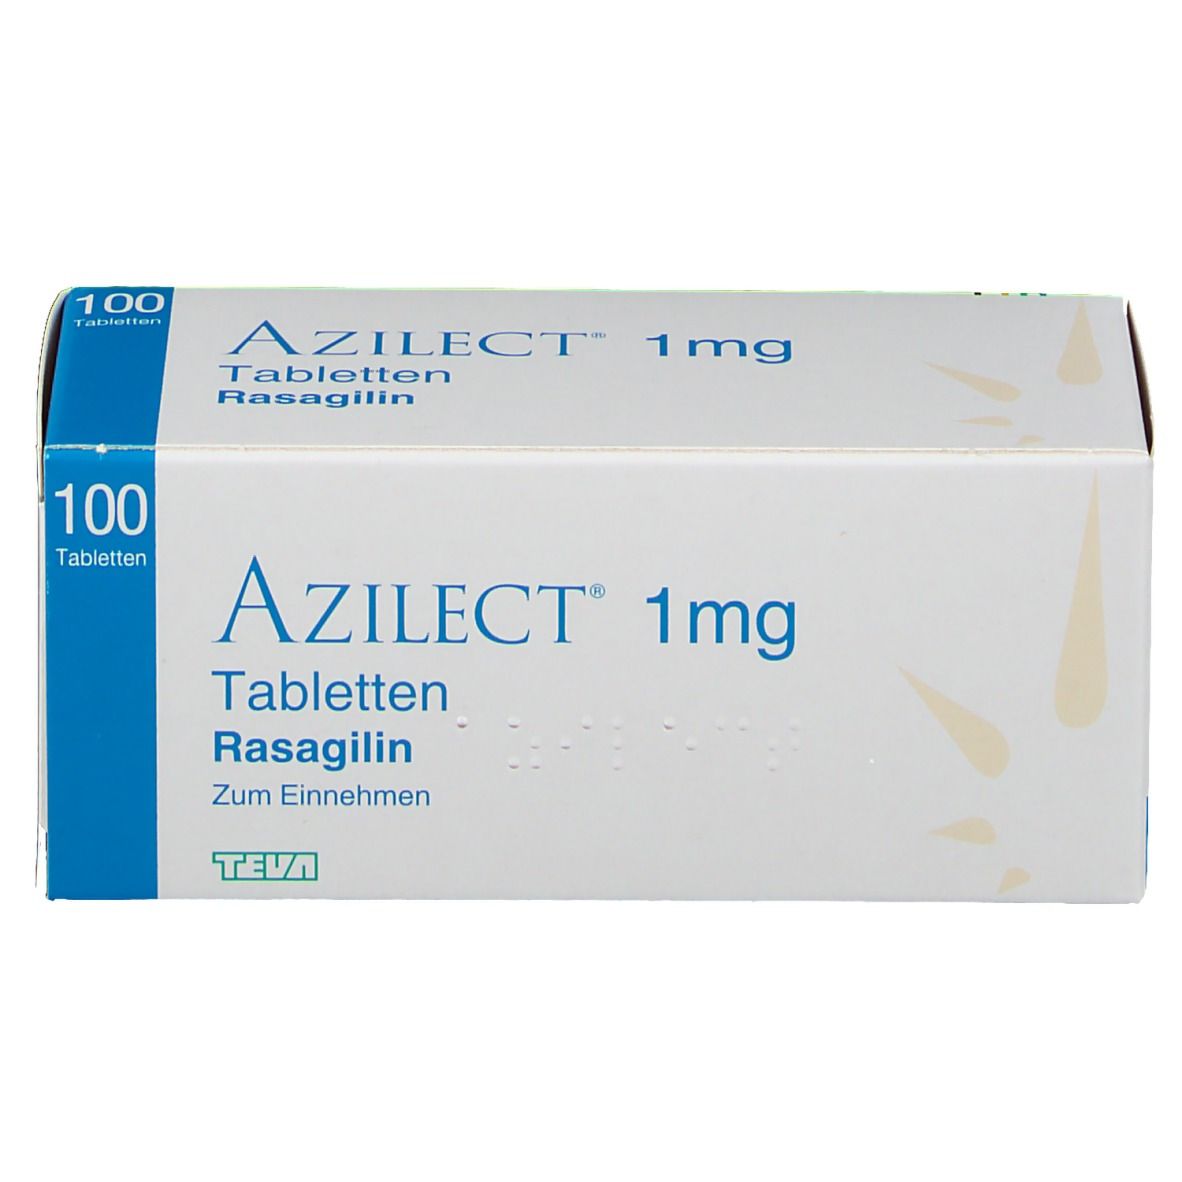 AZILECT® 1 mg